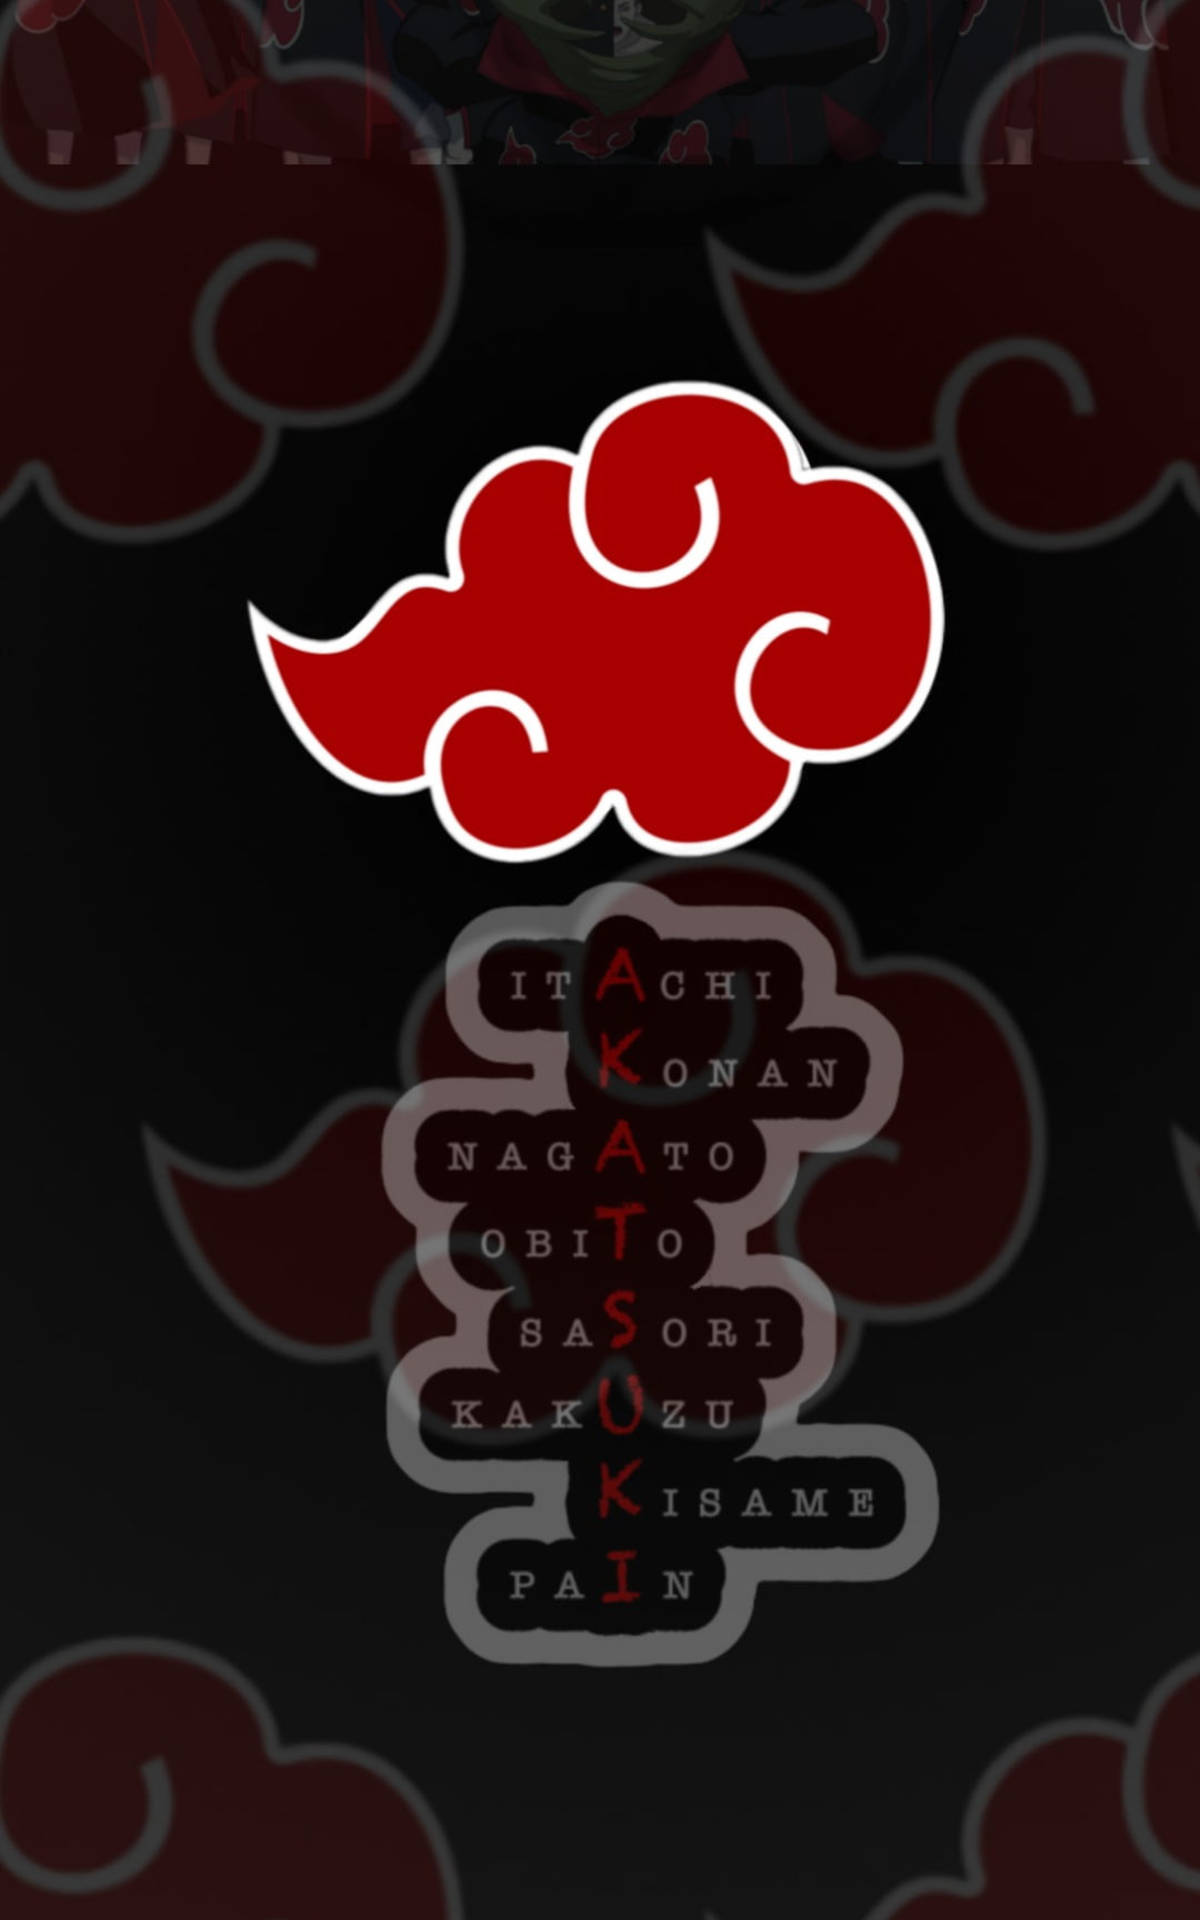 Akatsuki Telefon Logo Mnemonisk Tapet: Farverigt logo af Akatsuki, der springer ud af baggrunden. Wallpaper